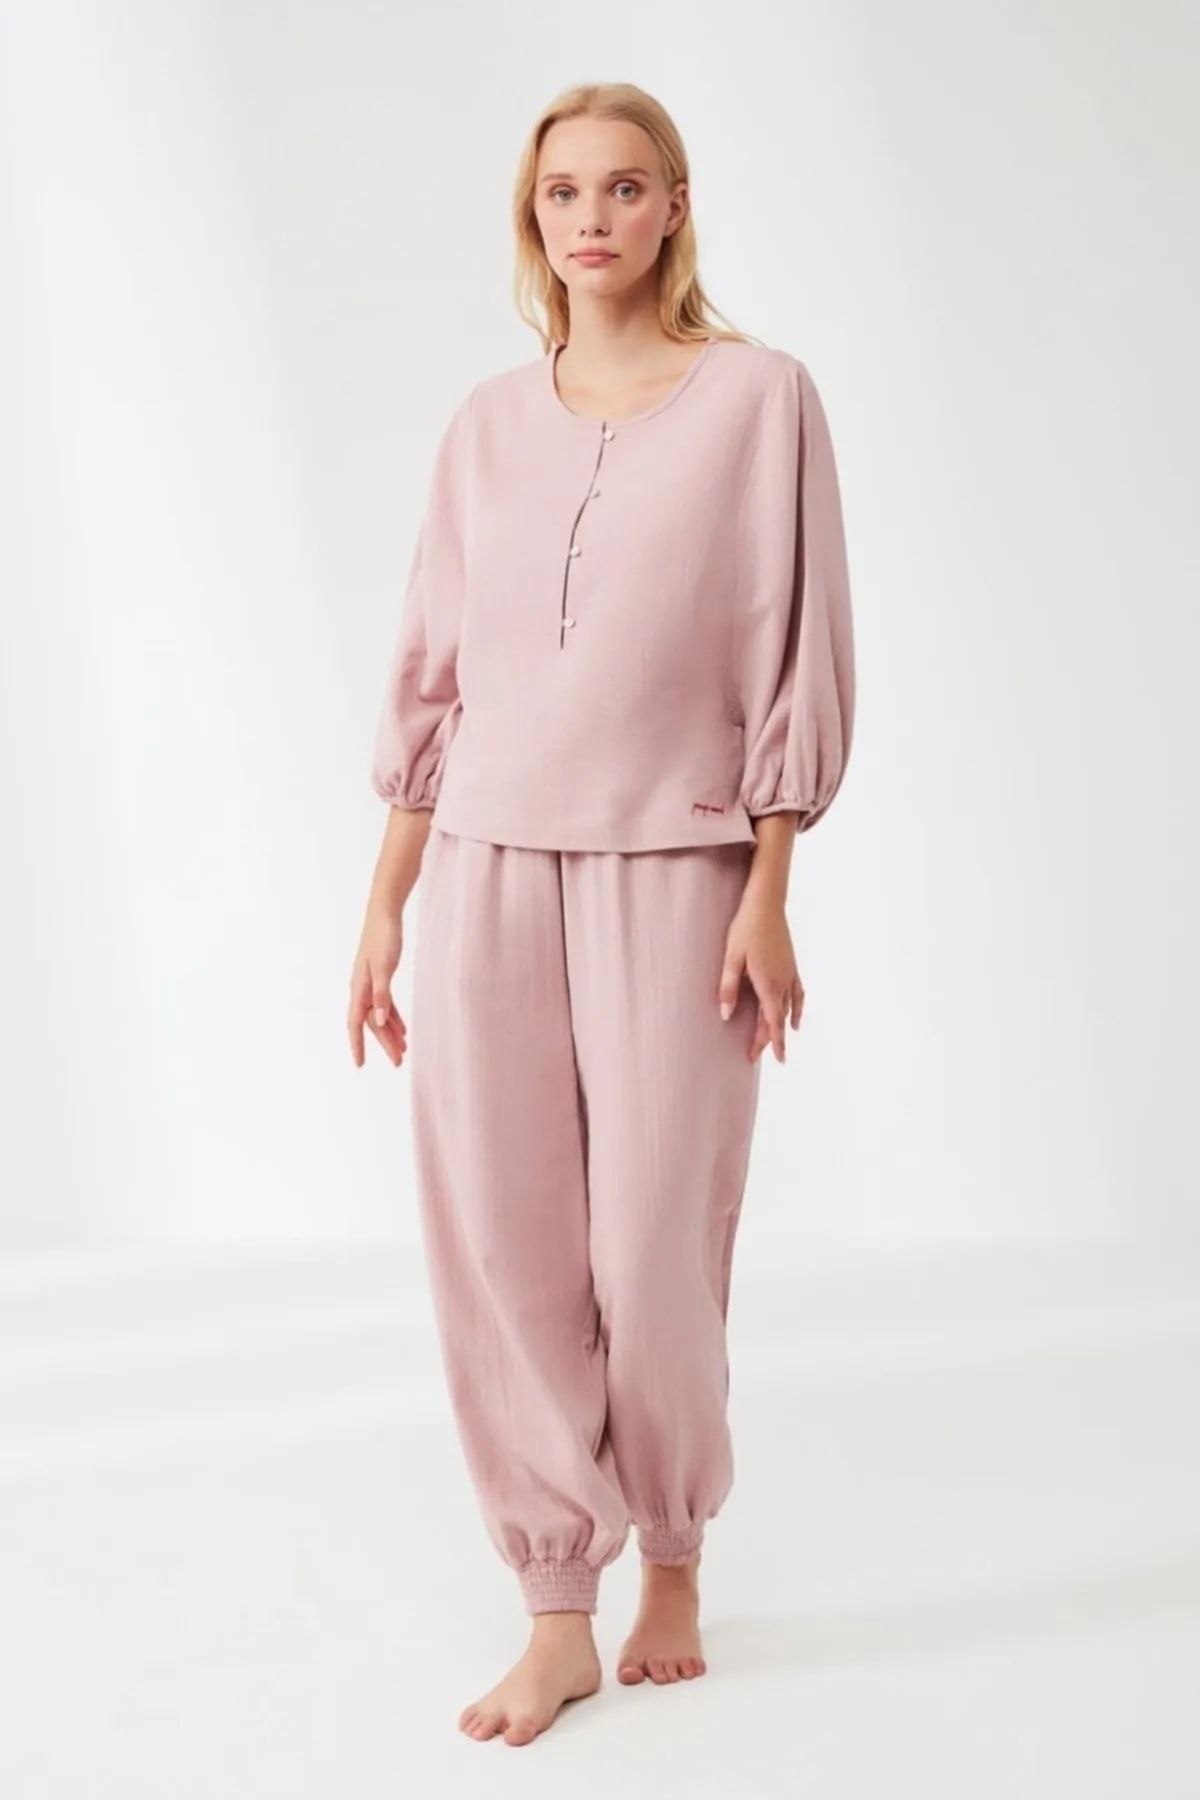 Catherines Combed Cotton Mood Capri Sleeve Cotton Women's Pajama